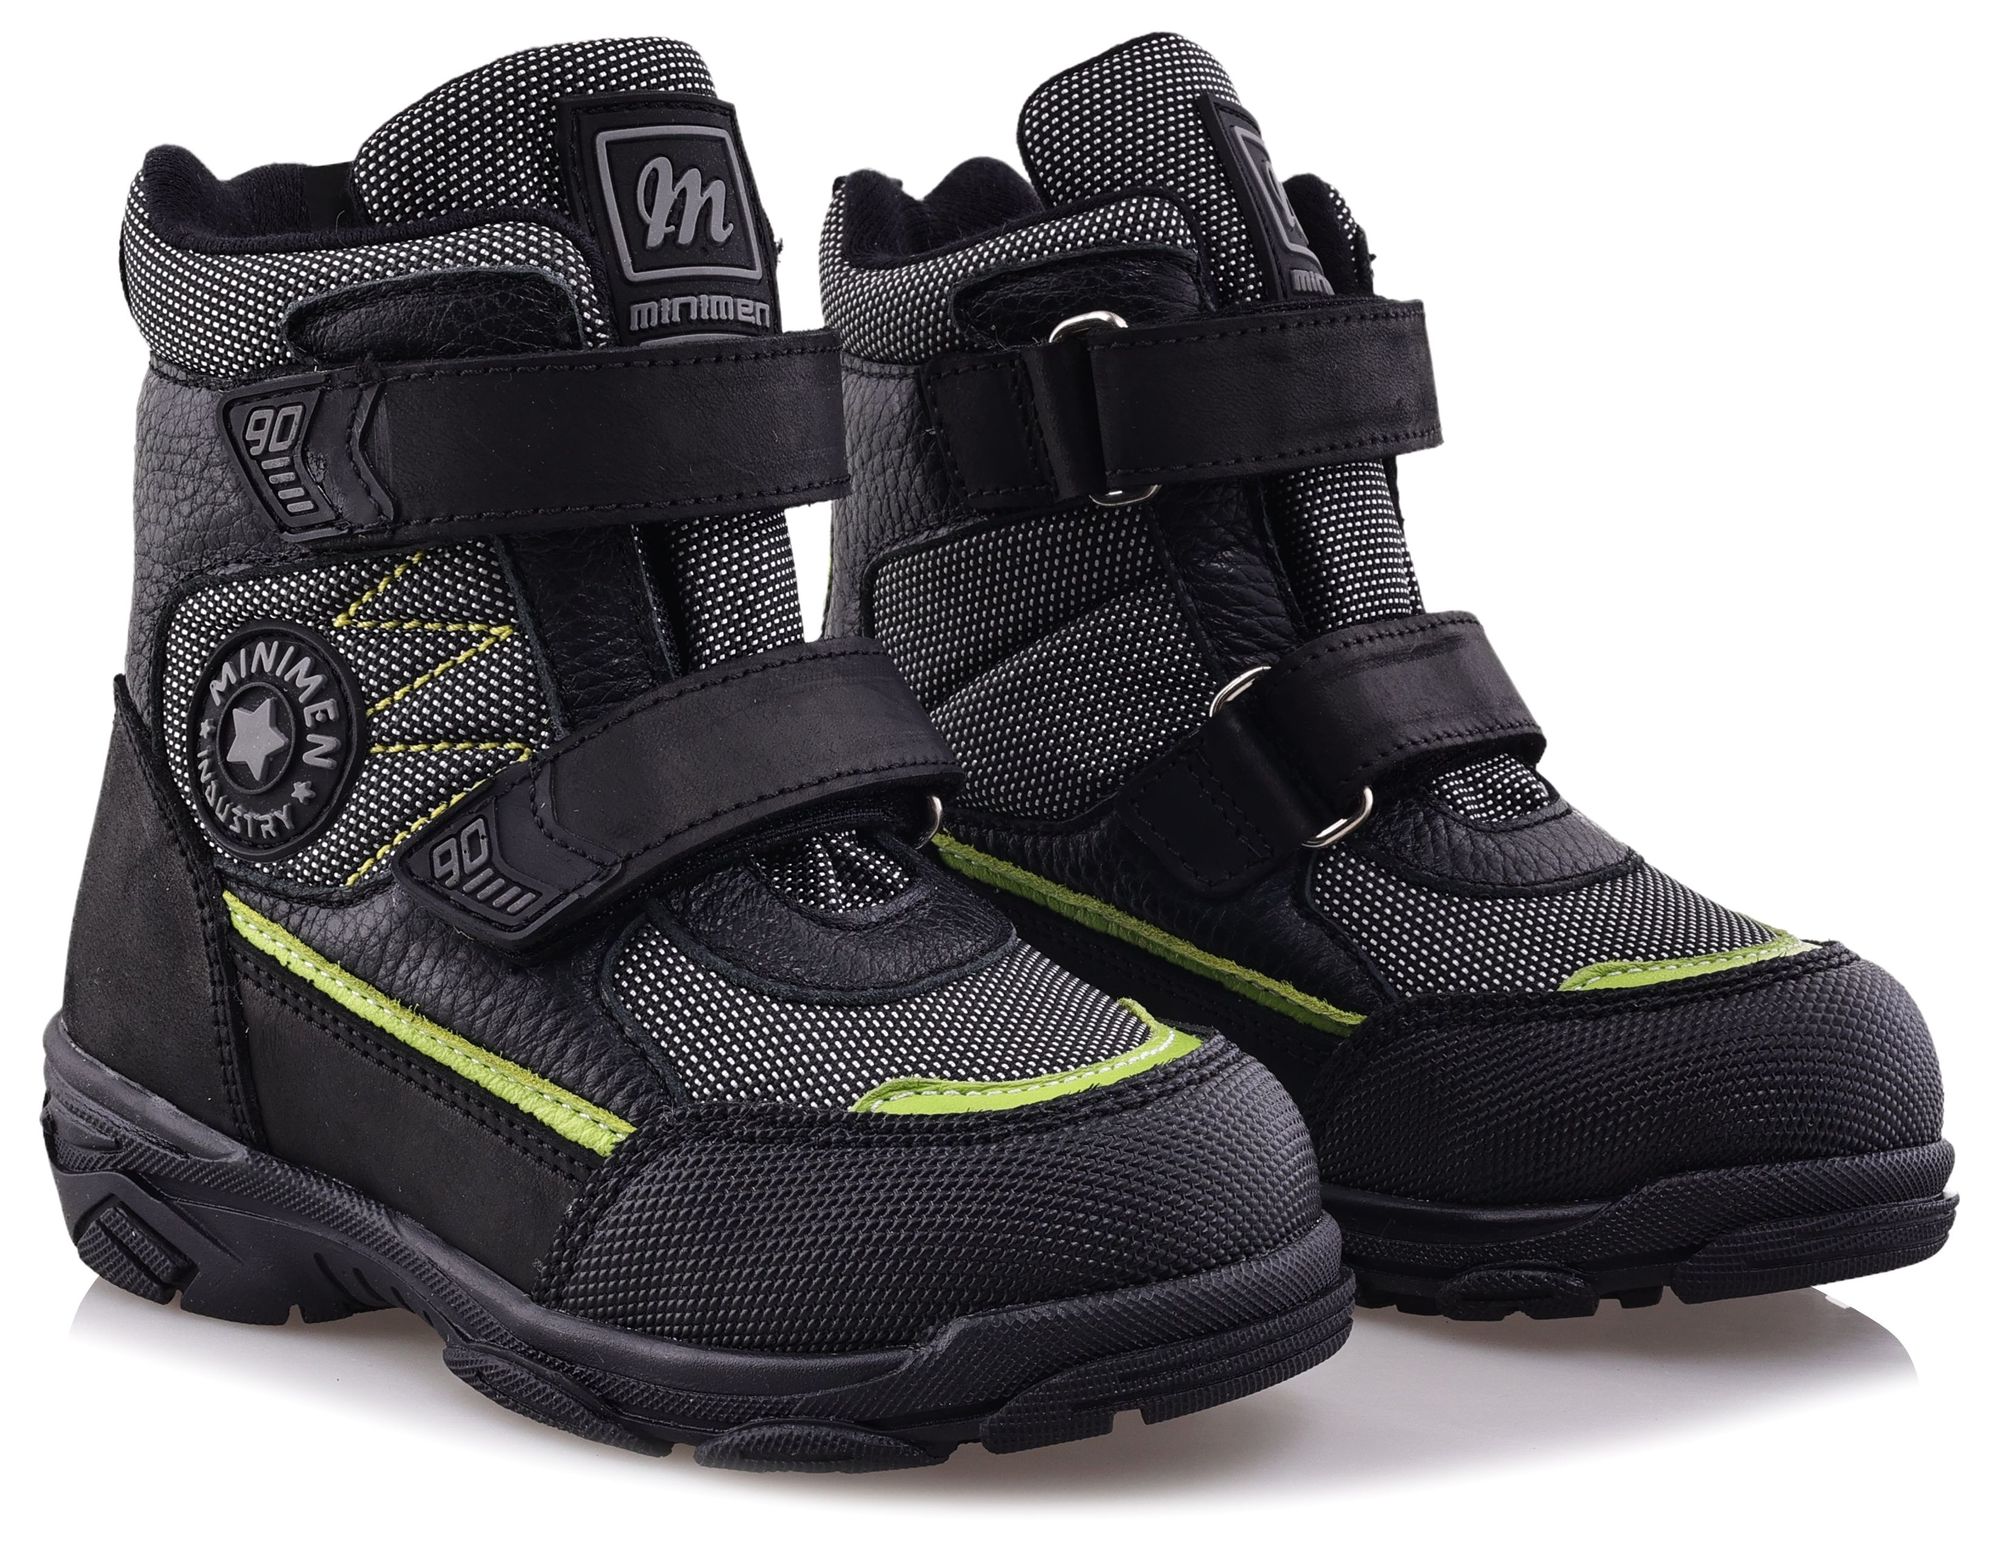 Ботинки Minimen для мальчиков, чёрные, размер 33, 2657-64-23B-02